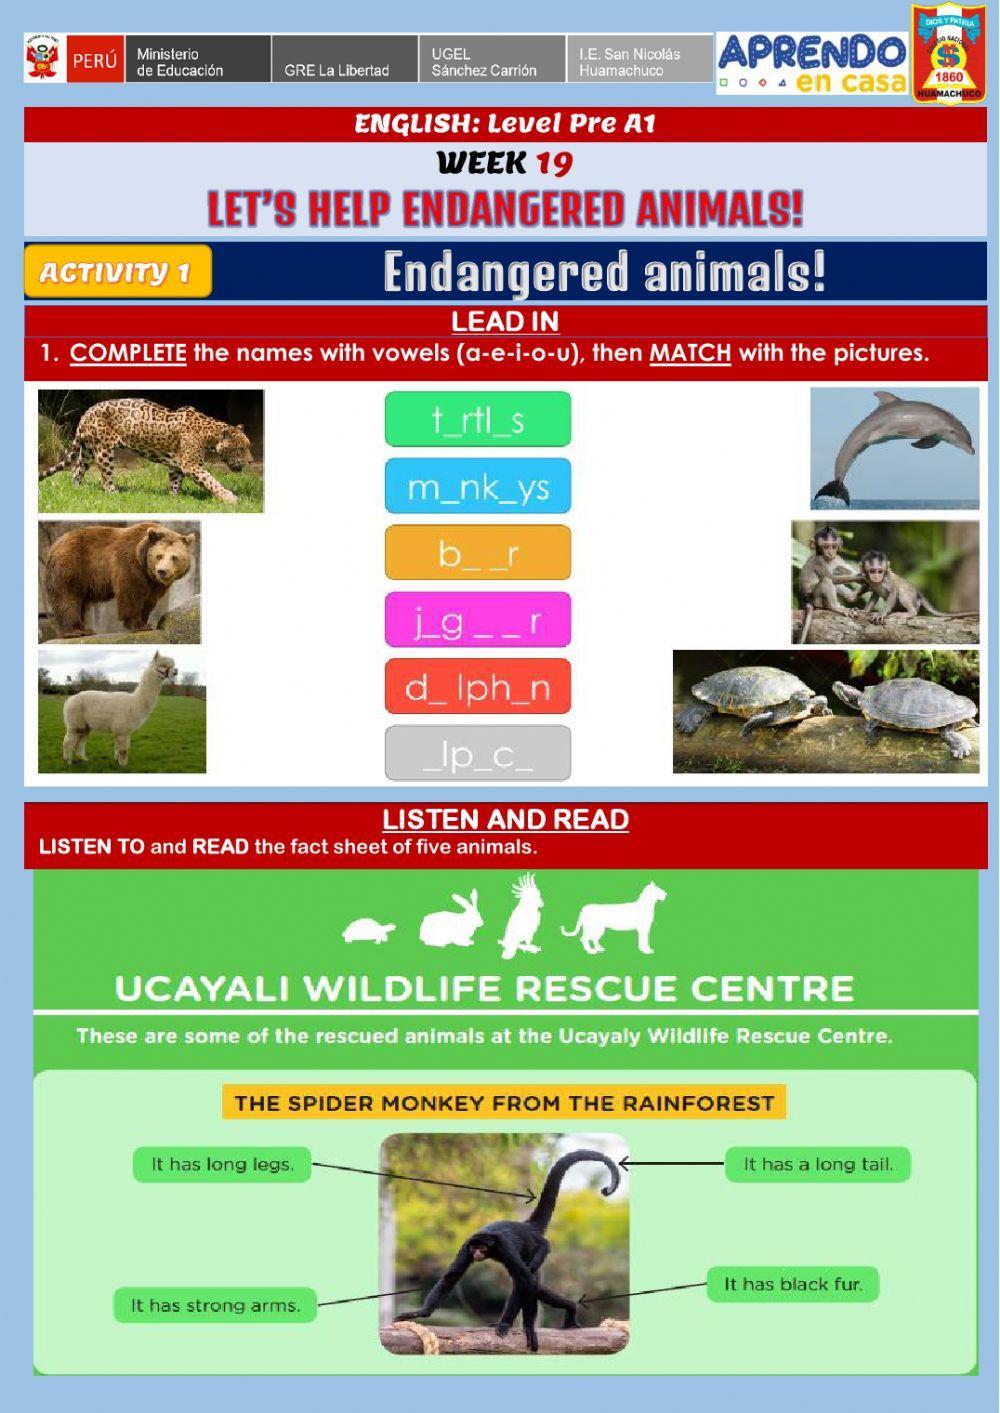 Let’s help endangered animals! -Endangered animals!